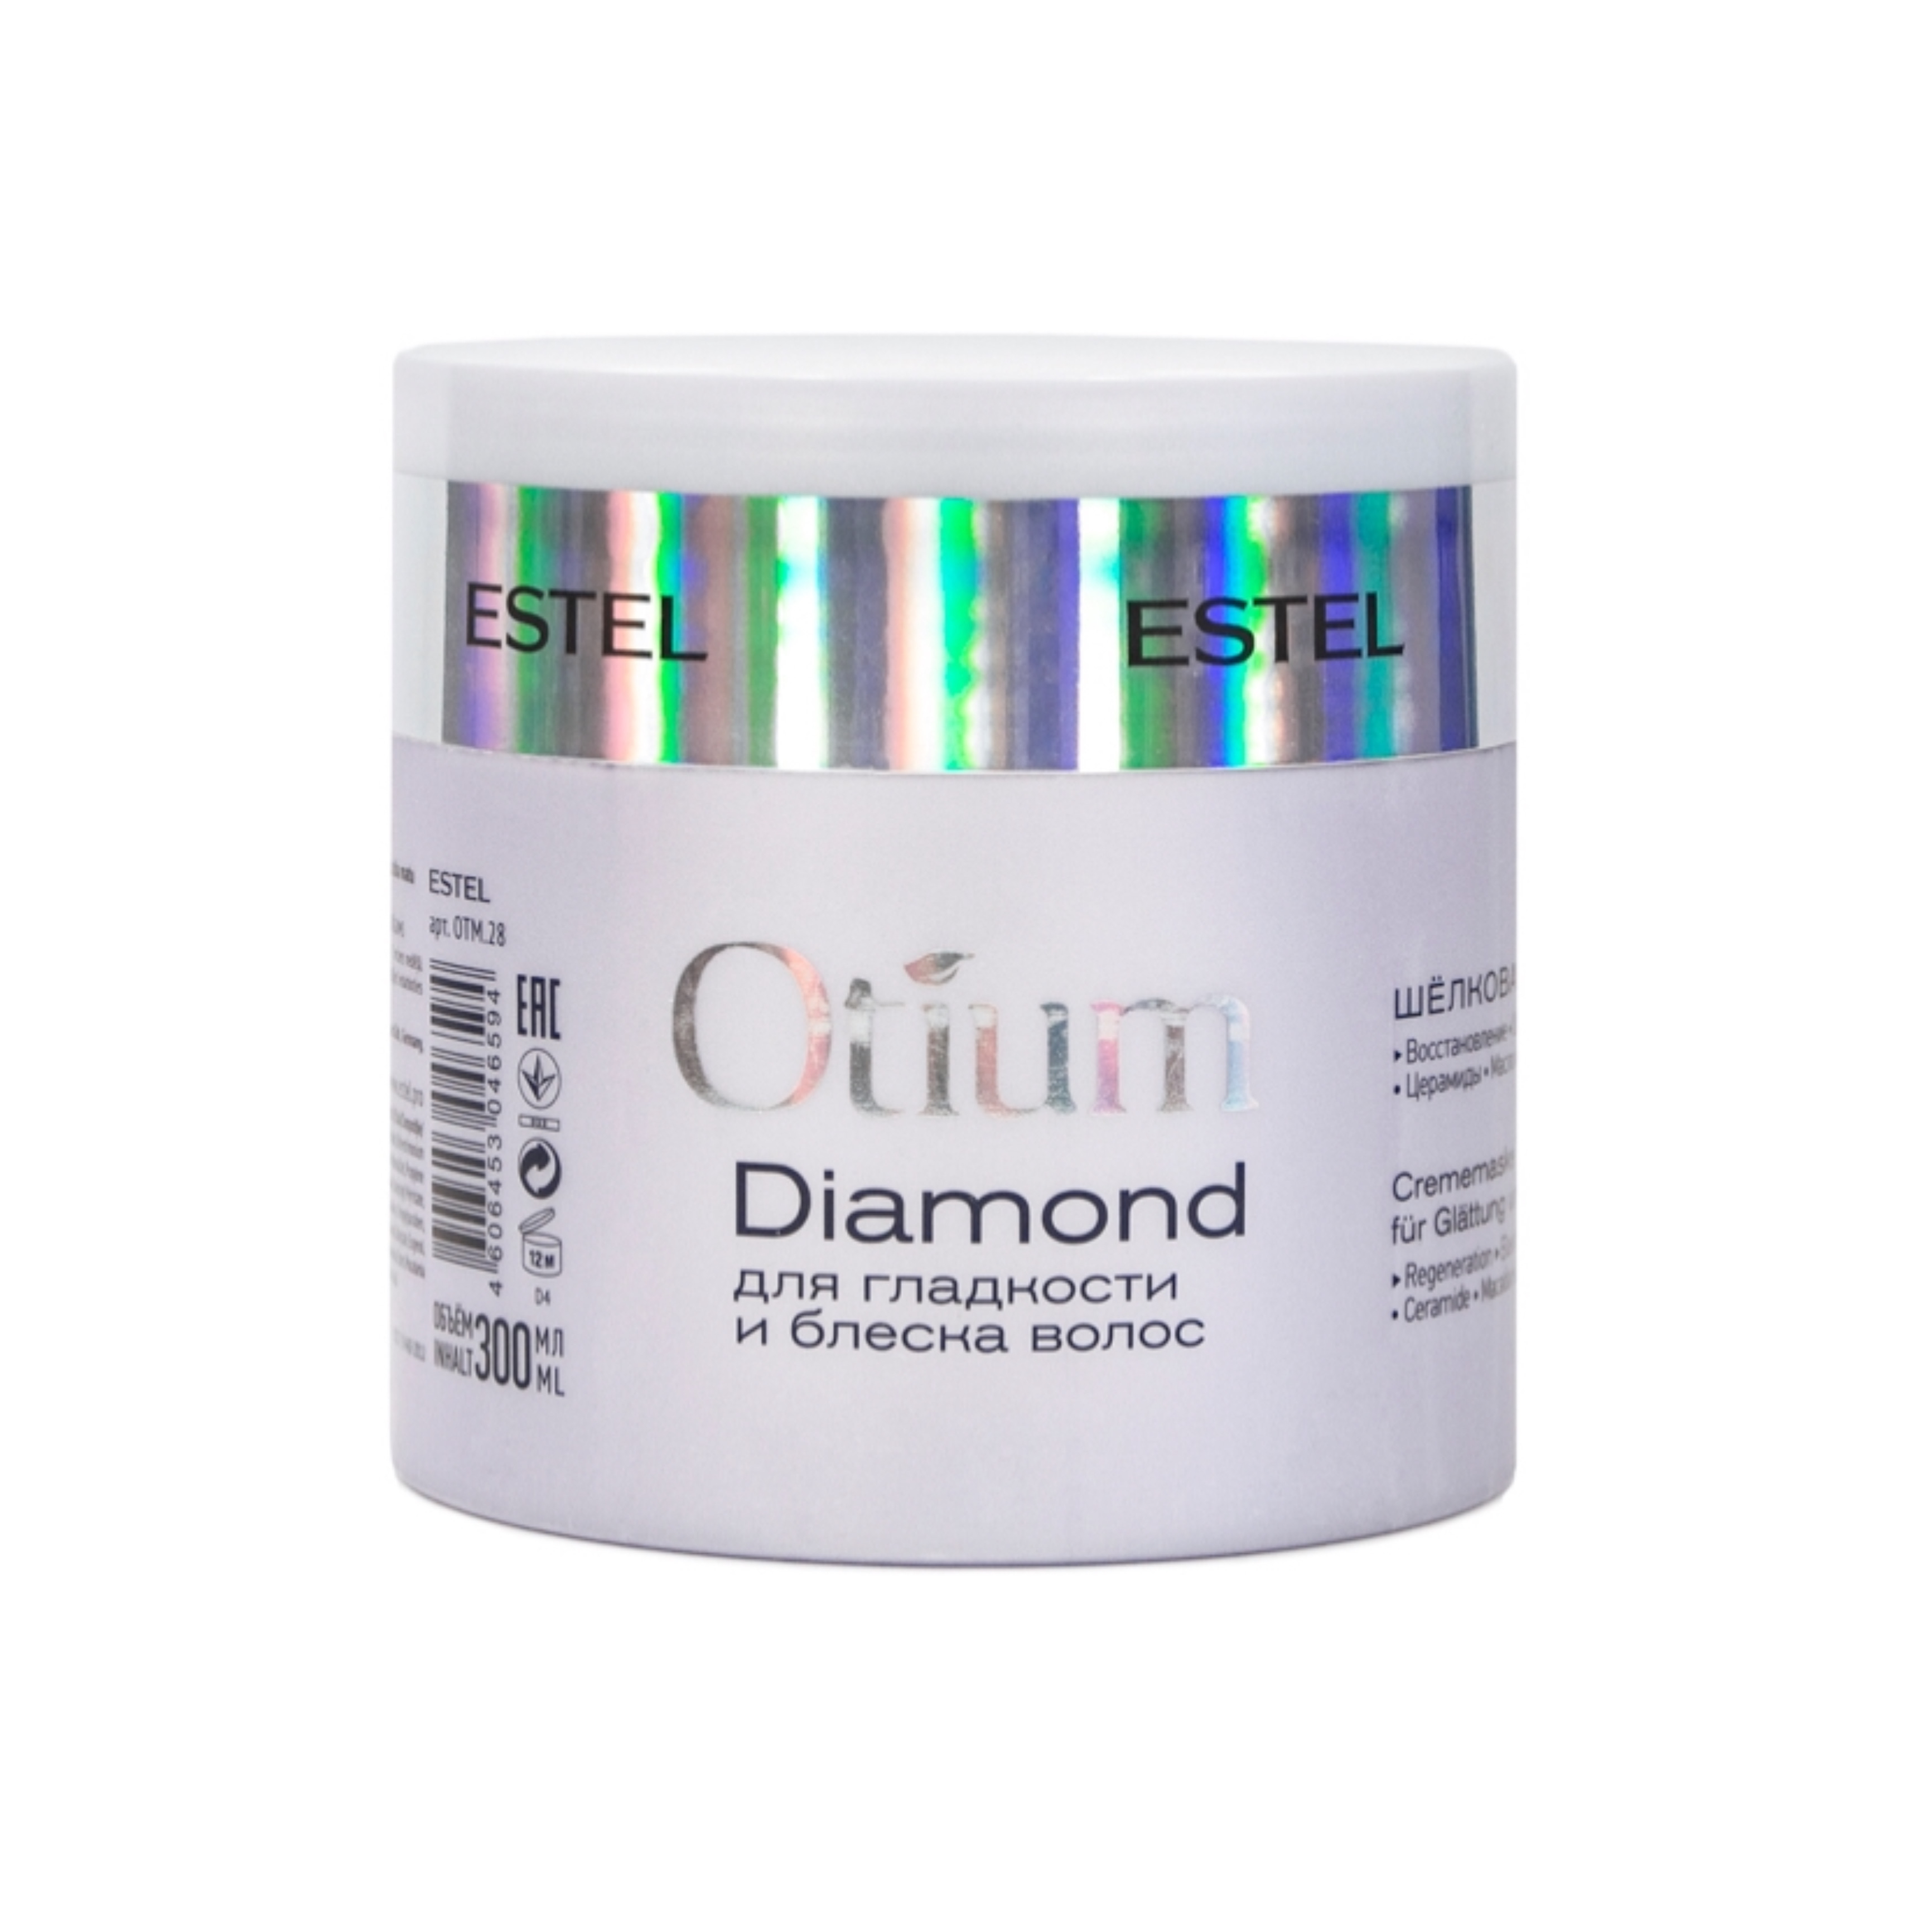 Шёлковая маска для гладкости и блеска волос Otium Diamond, 300 мл. Маска диамонд Эстель. Маска отиум Эстель.